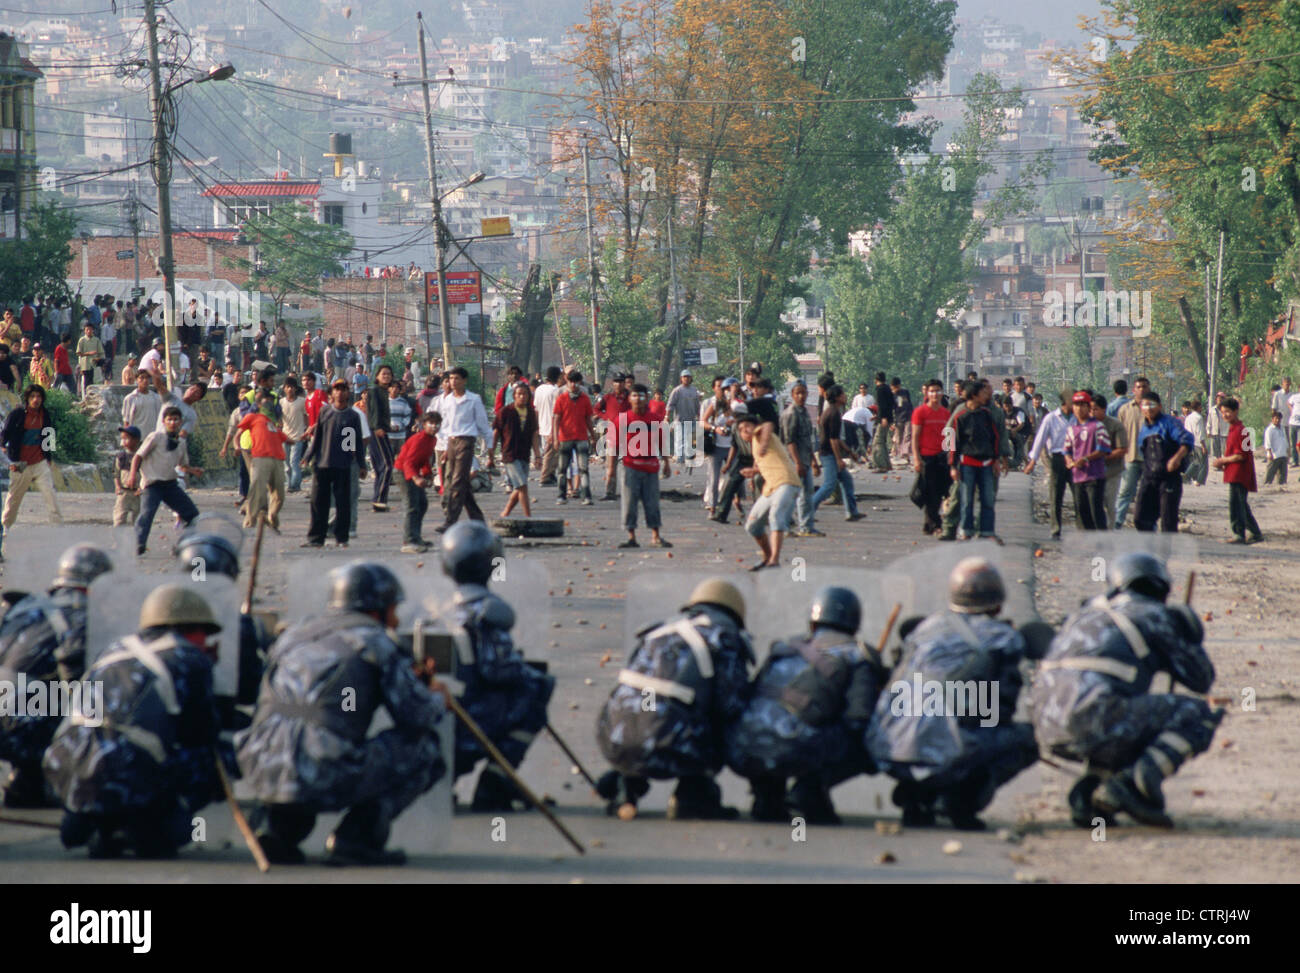 Los revoltosos luchando contra policías por más democracia (Nepal) Foto de stock